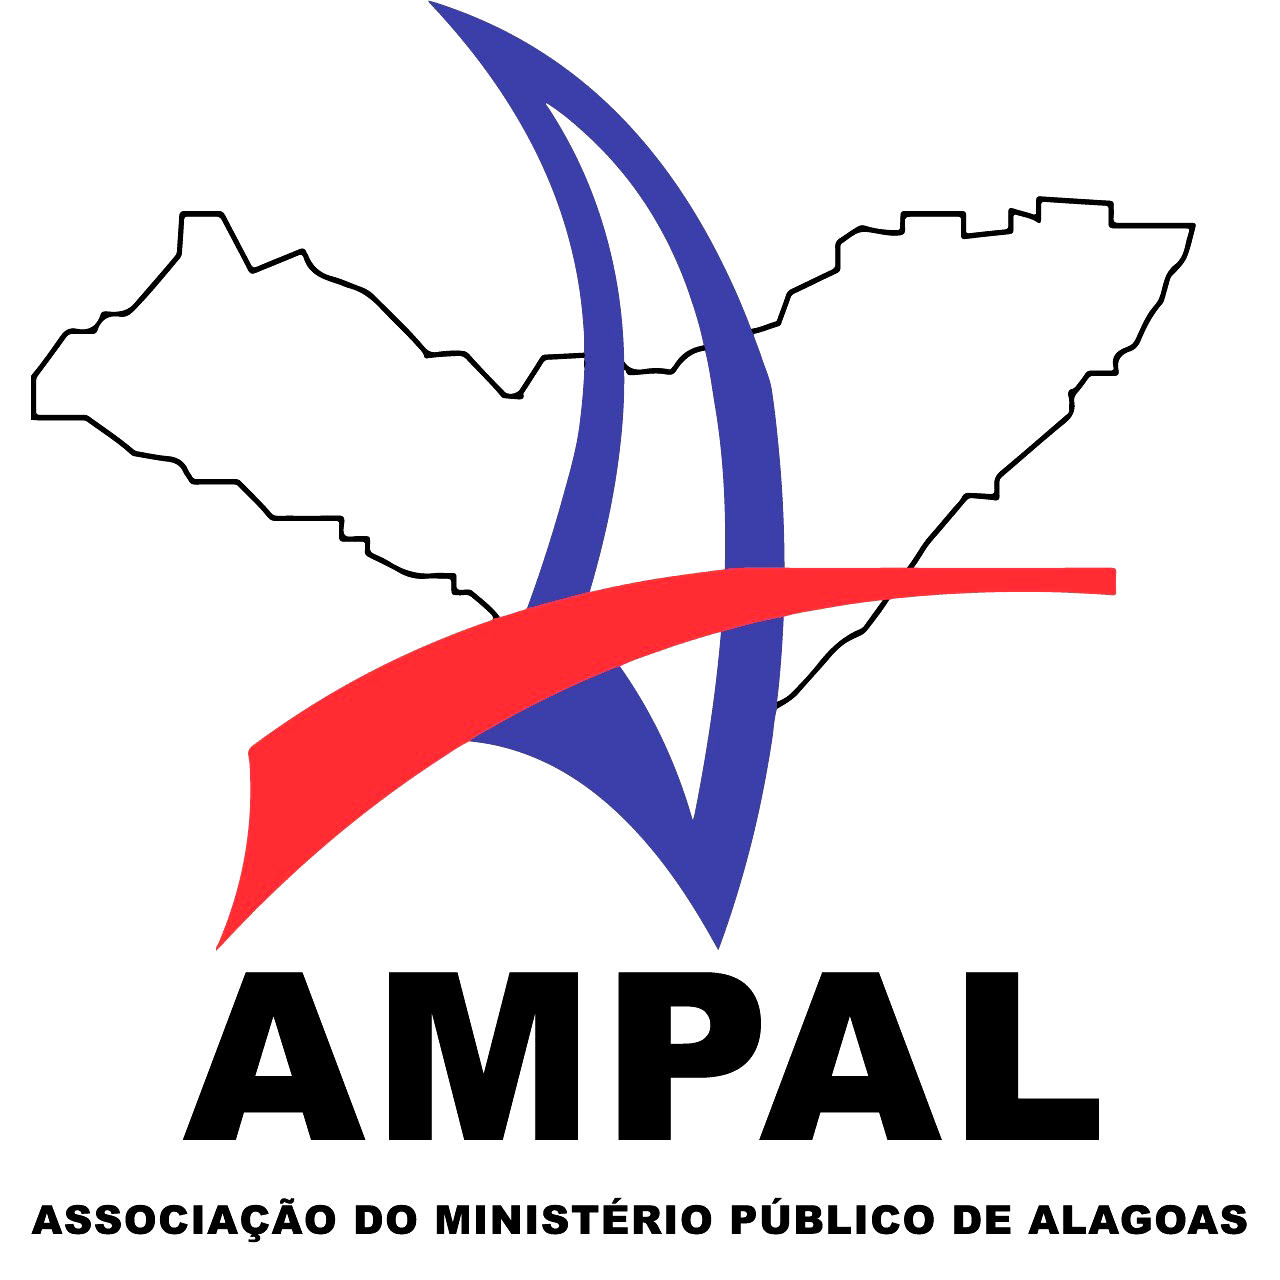 Associação do Ministério Público de Alagoas